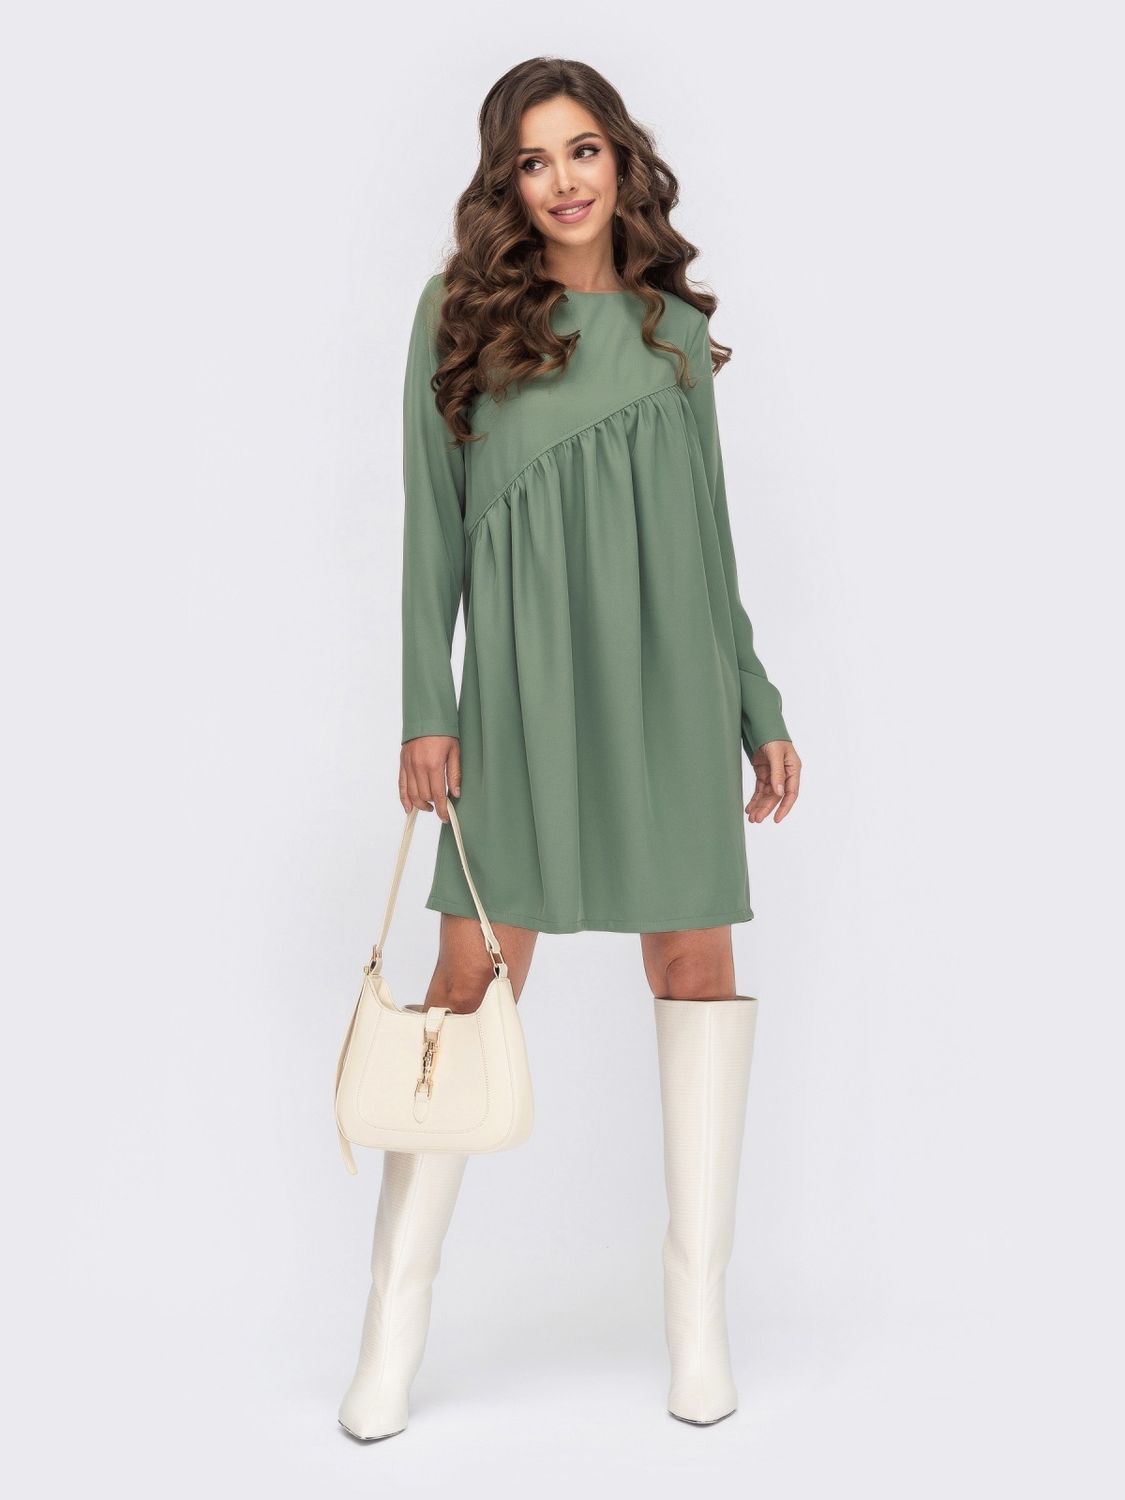 Жіноча сукня міні оливкового кольору - фото